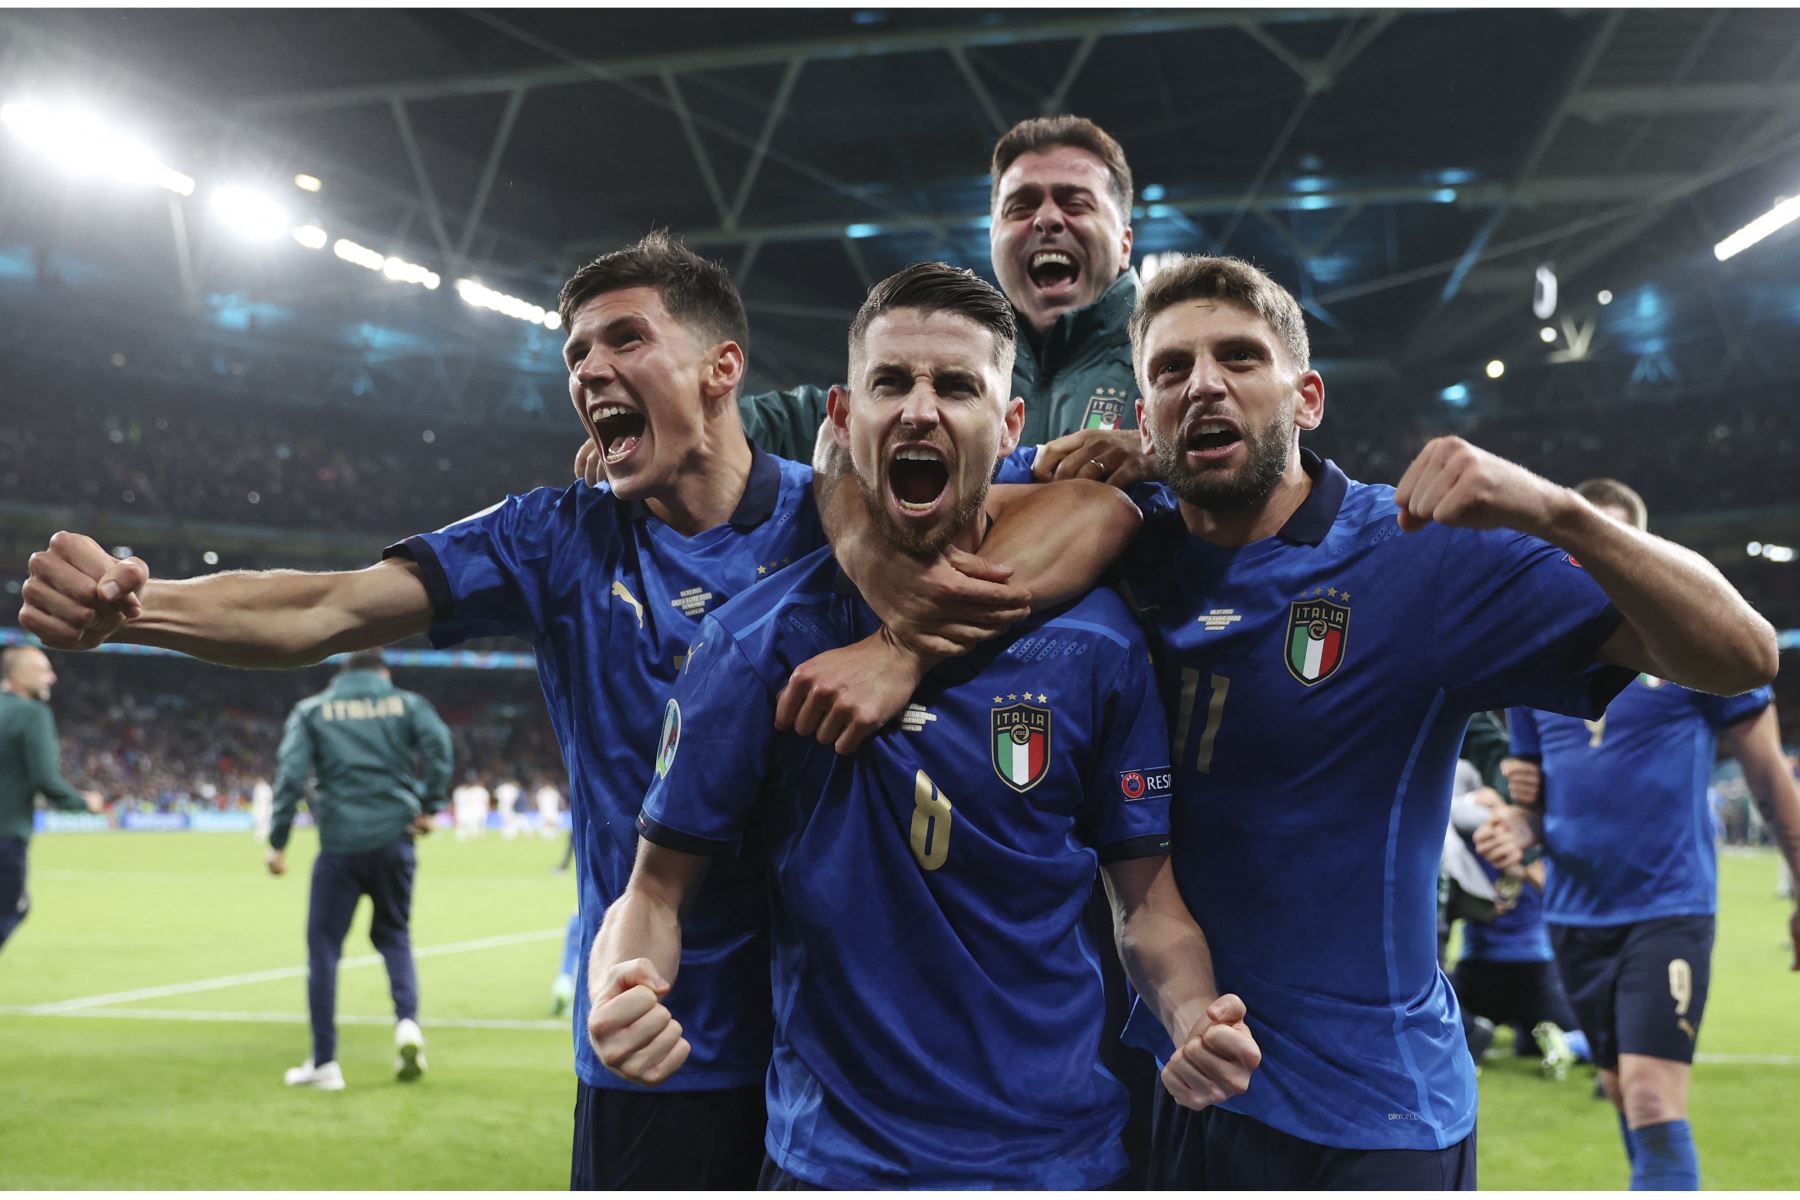 El centrocampista italiano Jorginho celebra con sus compañeros de equipo tras anotar en la tanda de penaltis y ganar a España la semifinal de la UEFA EURO 2020, en el estadio de Wembley, en Londres, Inglaterra. Foto: AFP